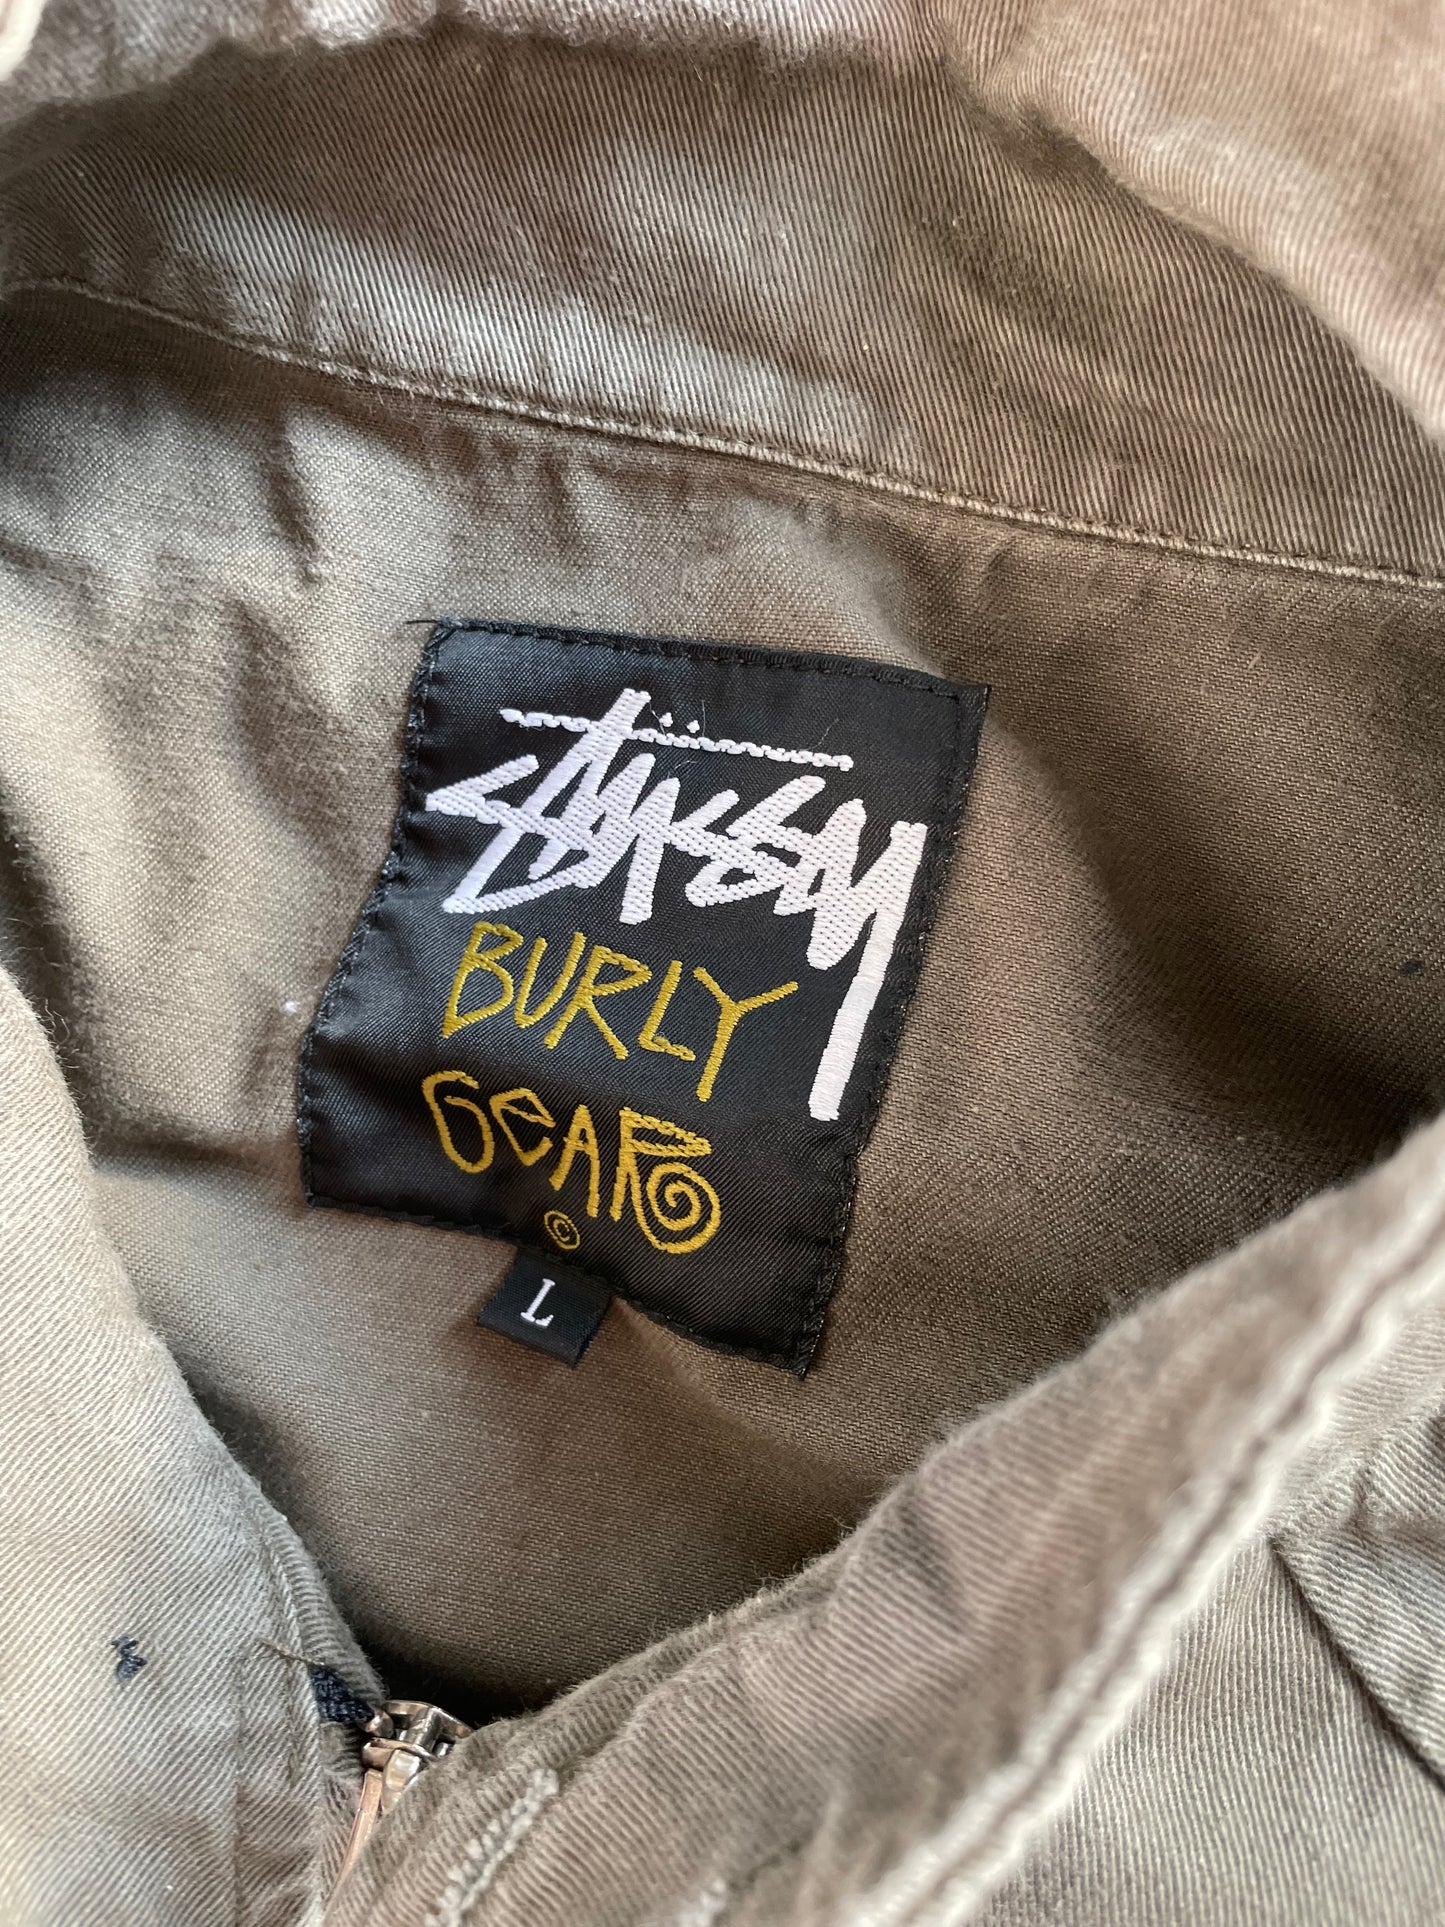 90s Stüssy Burly Gear Harrington jacket (L)